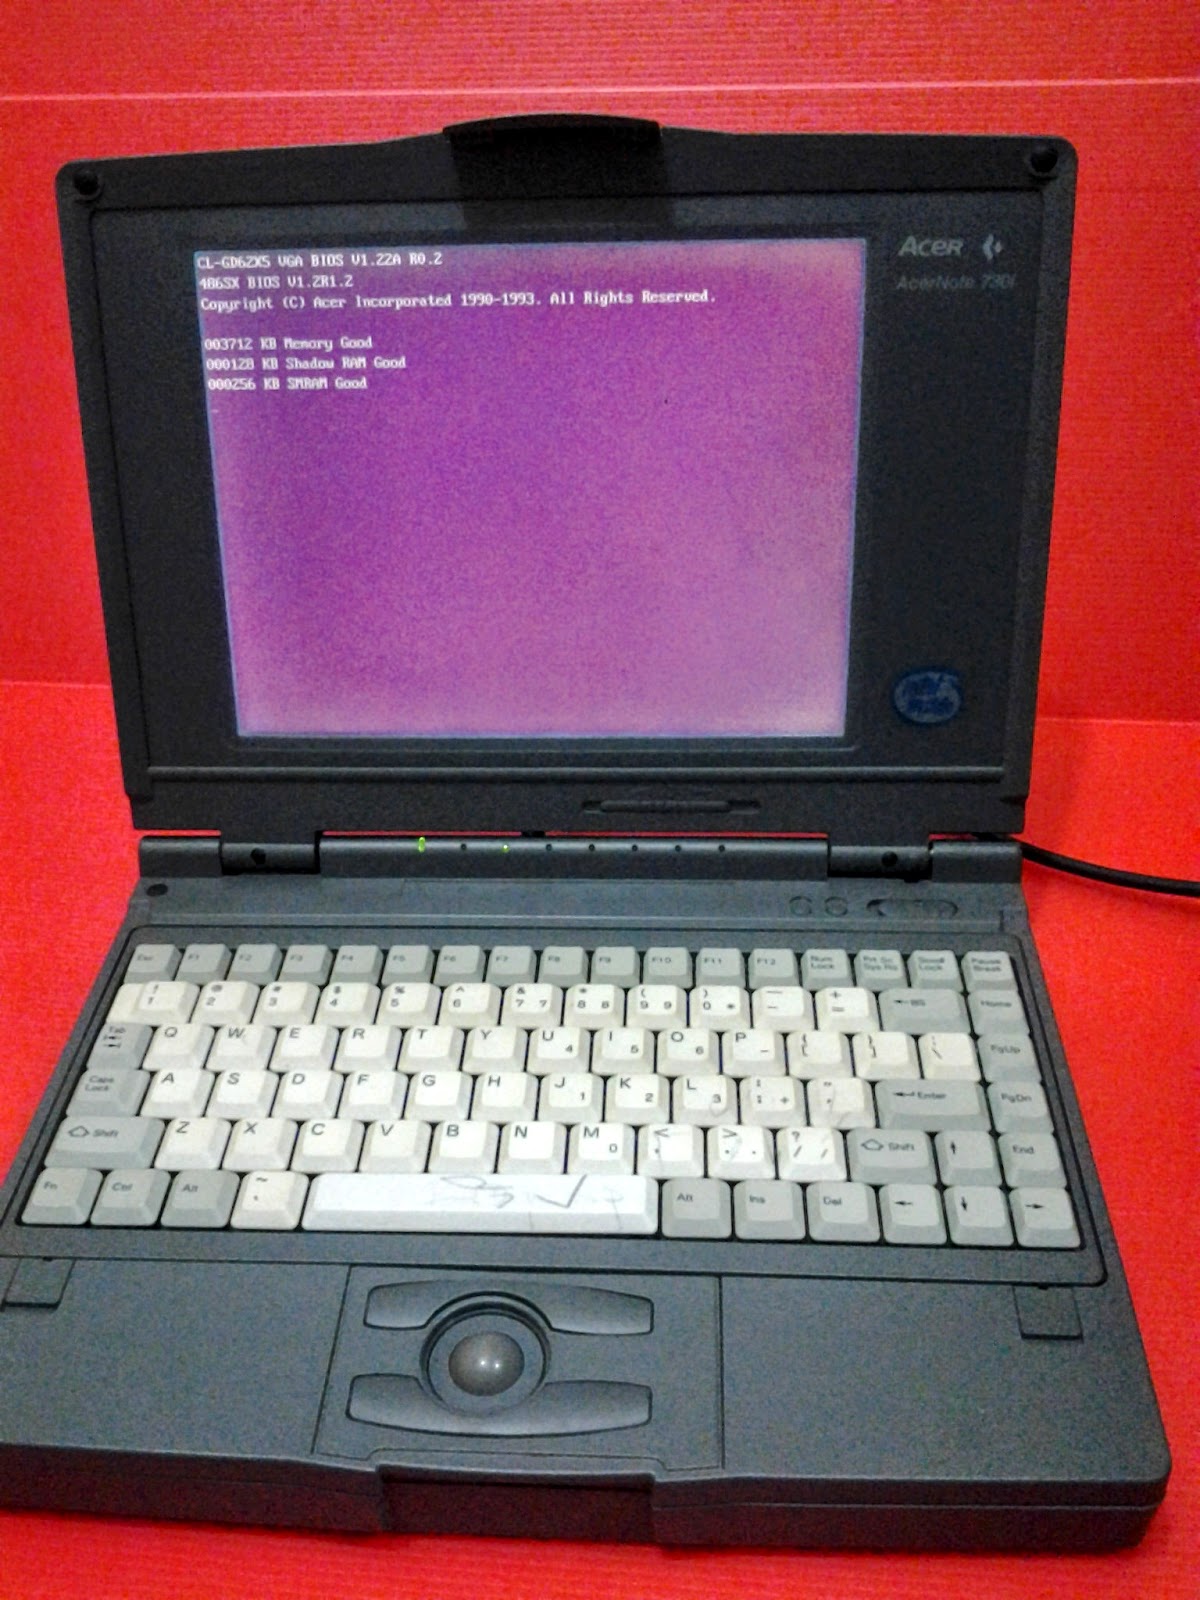 Toko Barang Bekas ku Laptop Acer Acernote 730i Jadul Antik